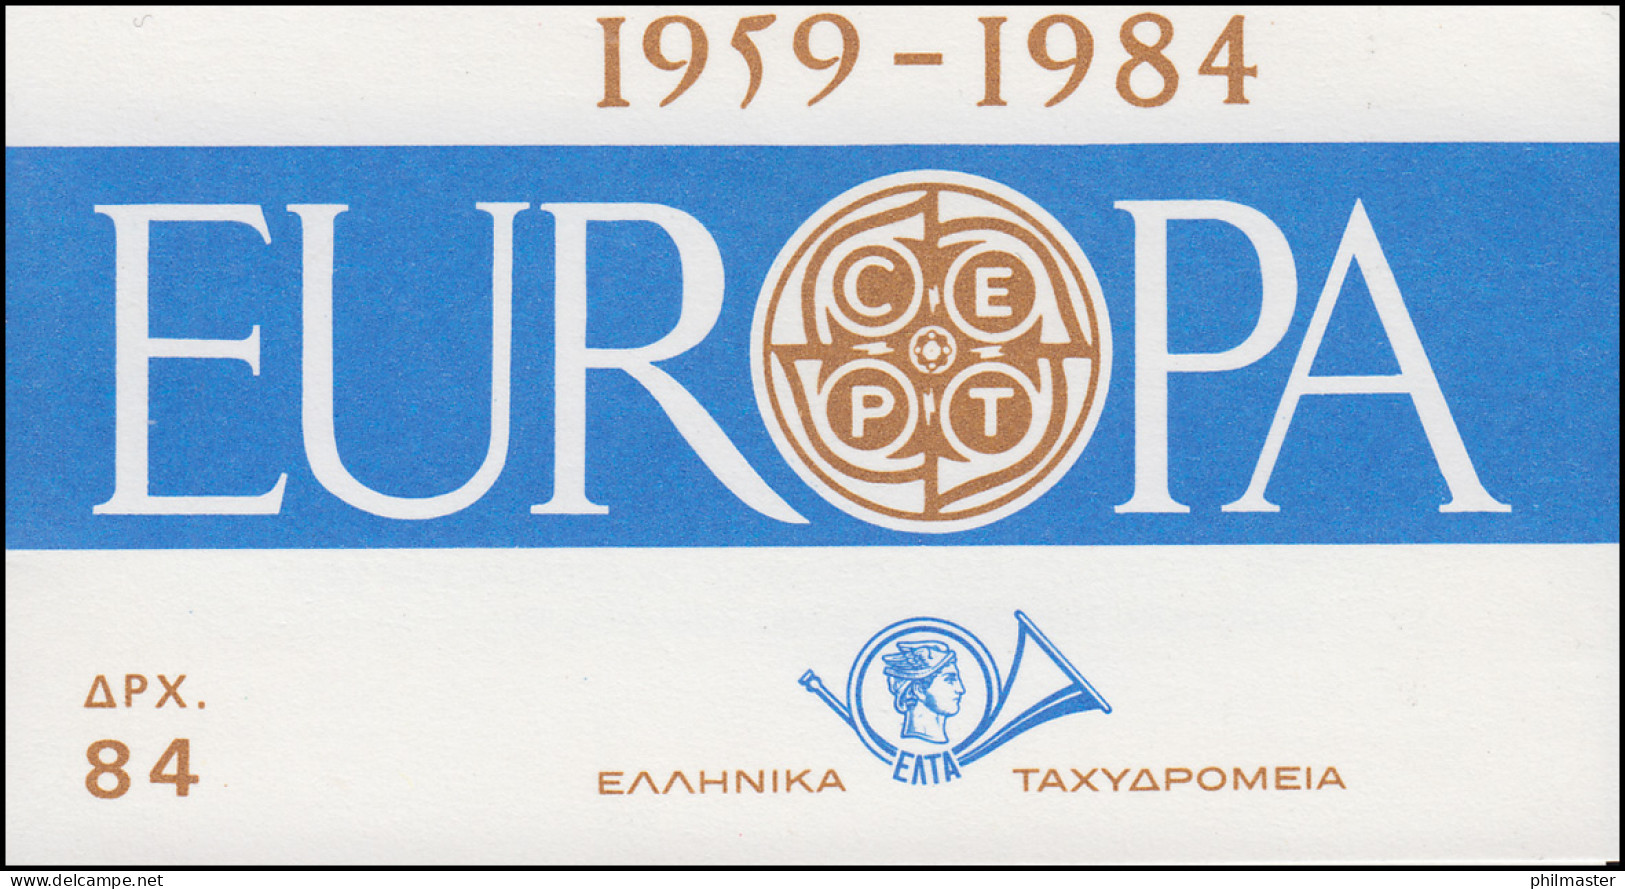 Griechenland Markenheftchen 1 Europa 1984, ** Postfrisch - Cuadernillos